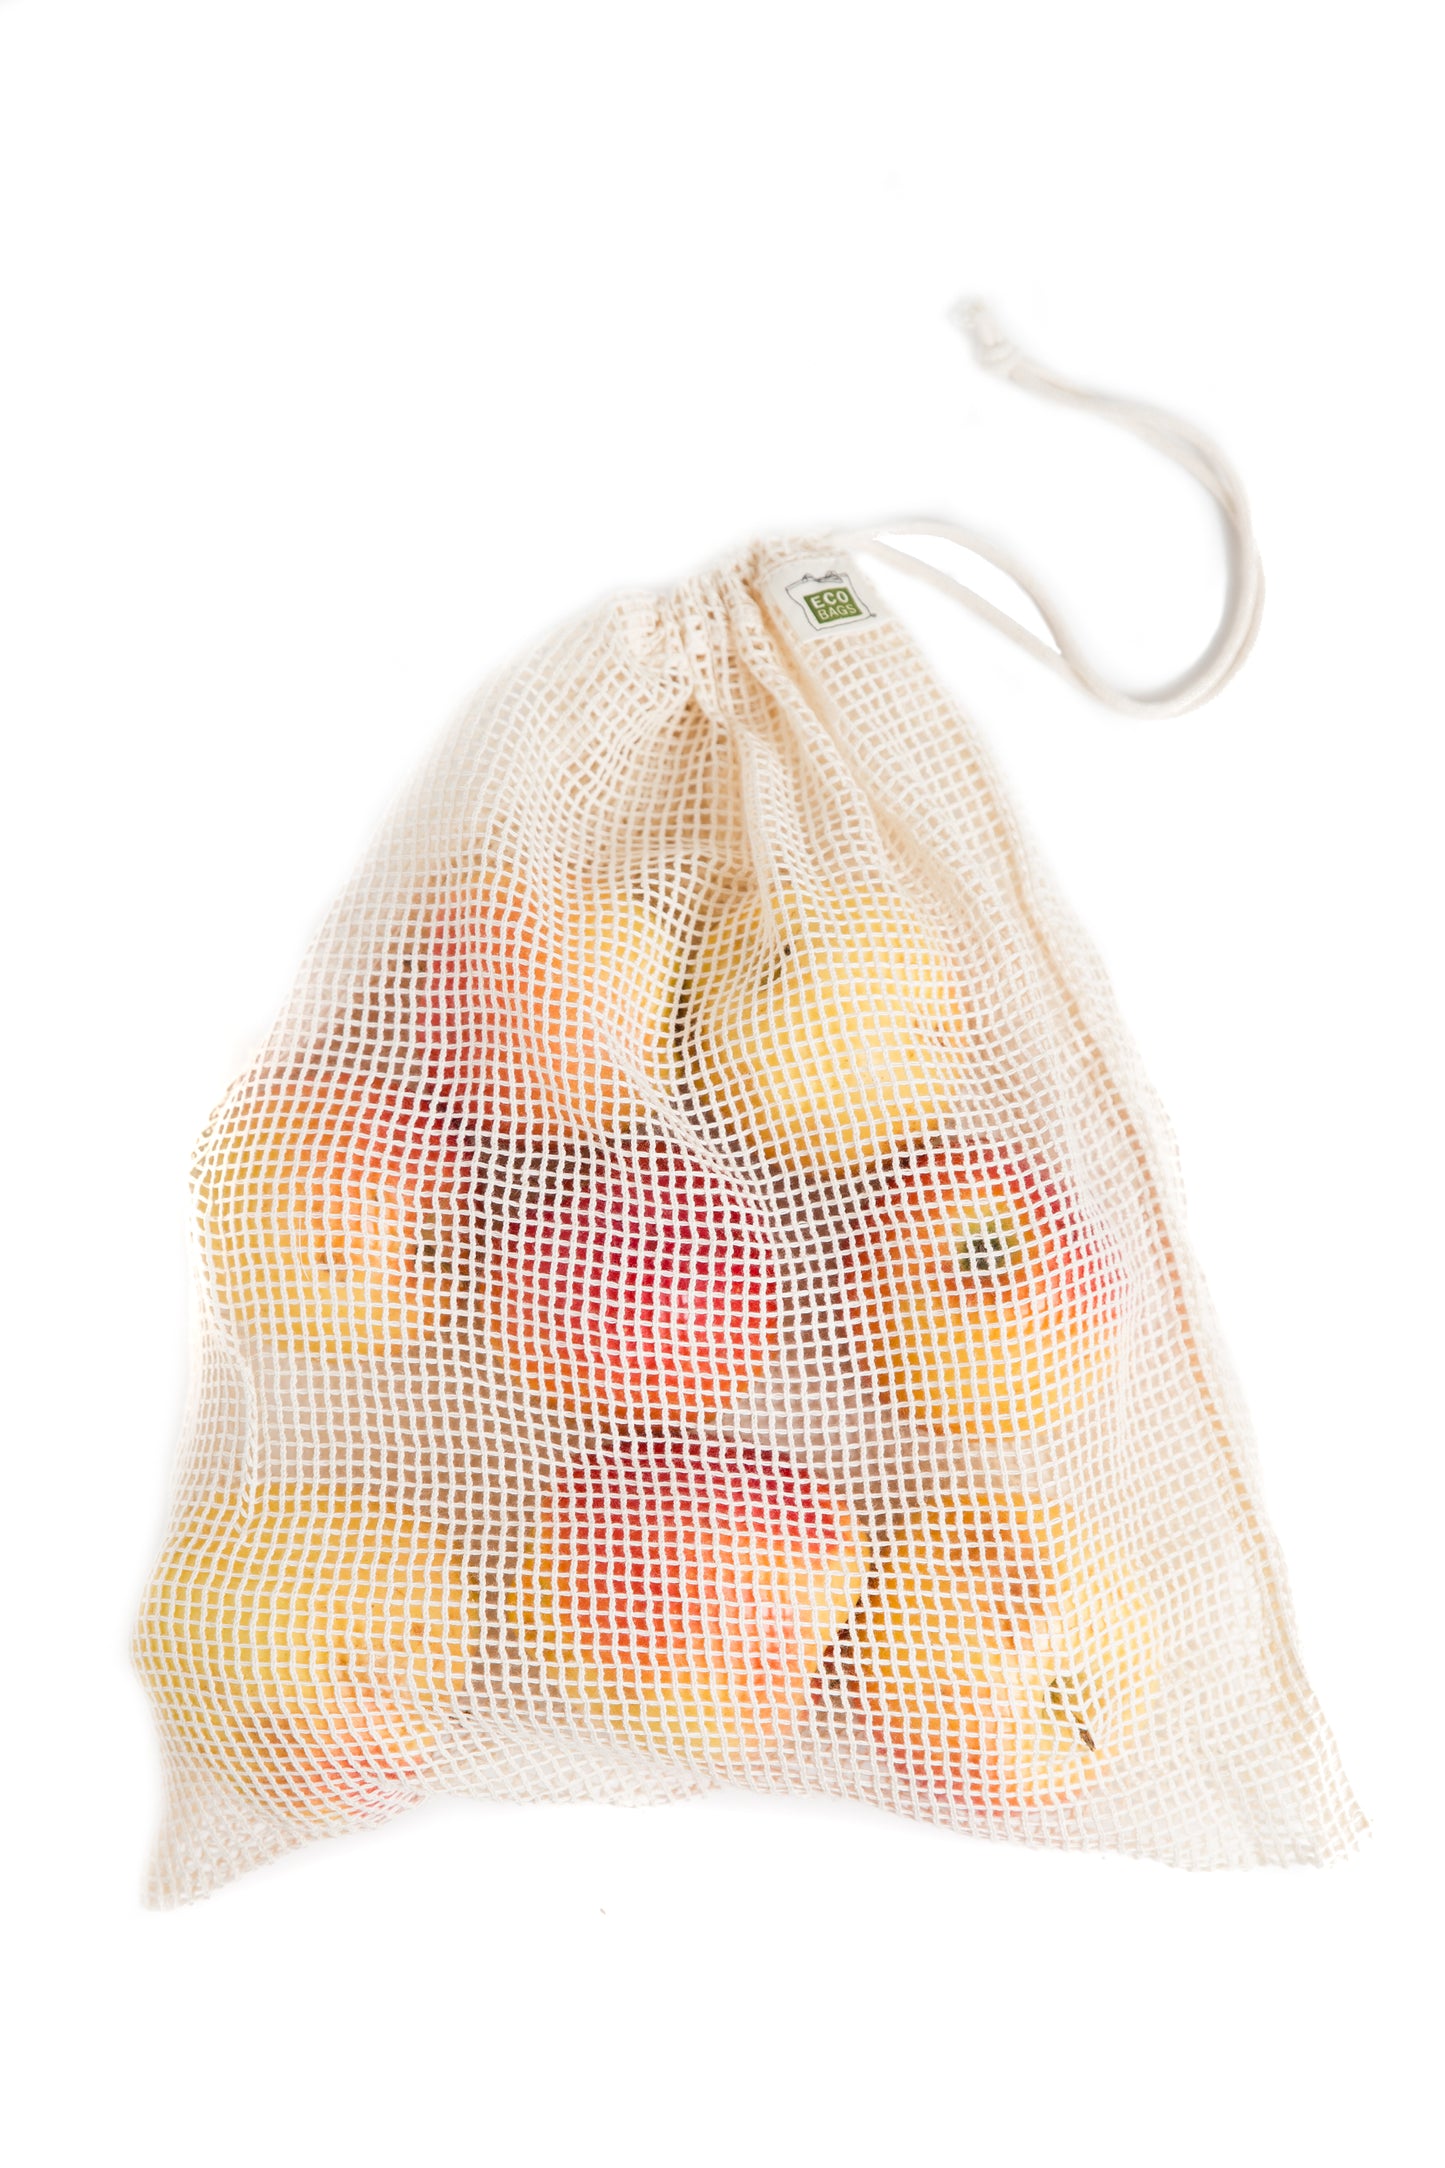 Organic Mesh Drawstring Bag Set Of 3 - Medium.